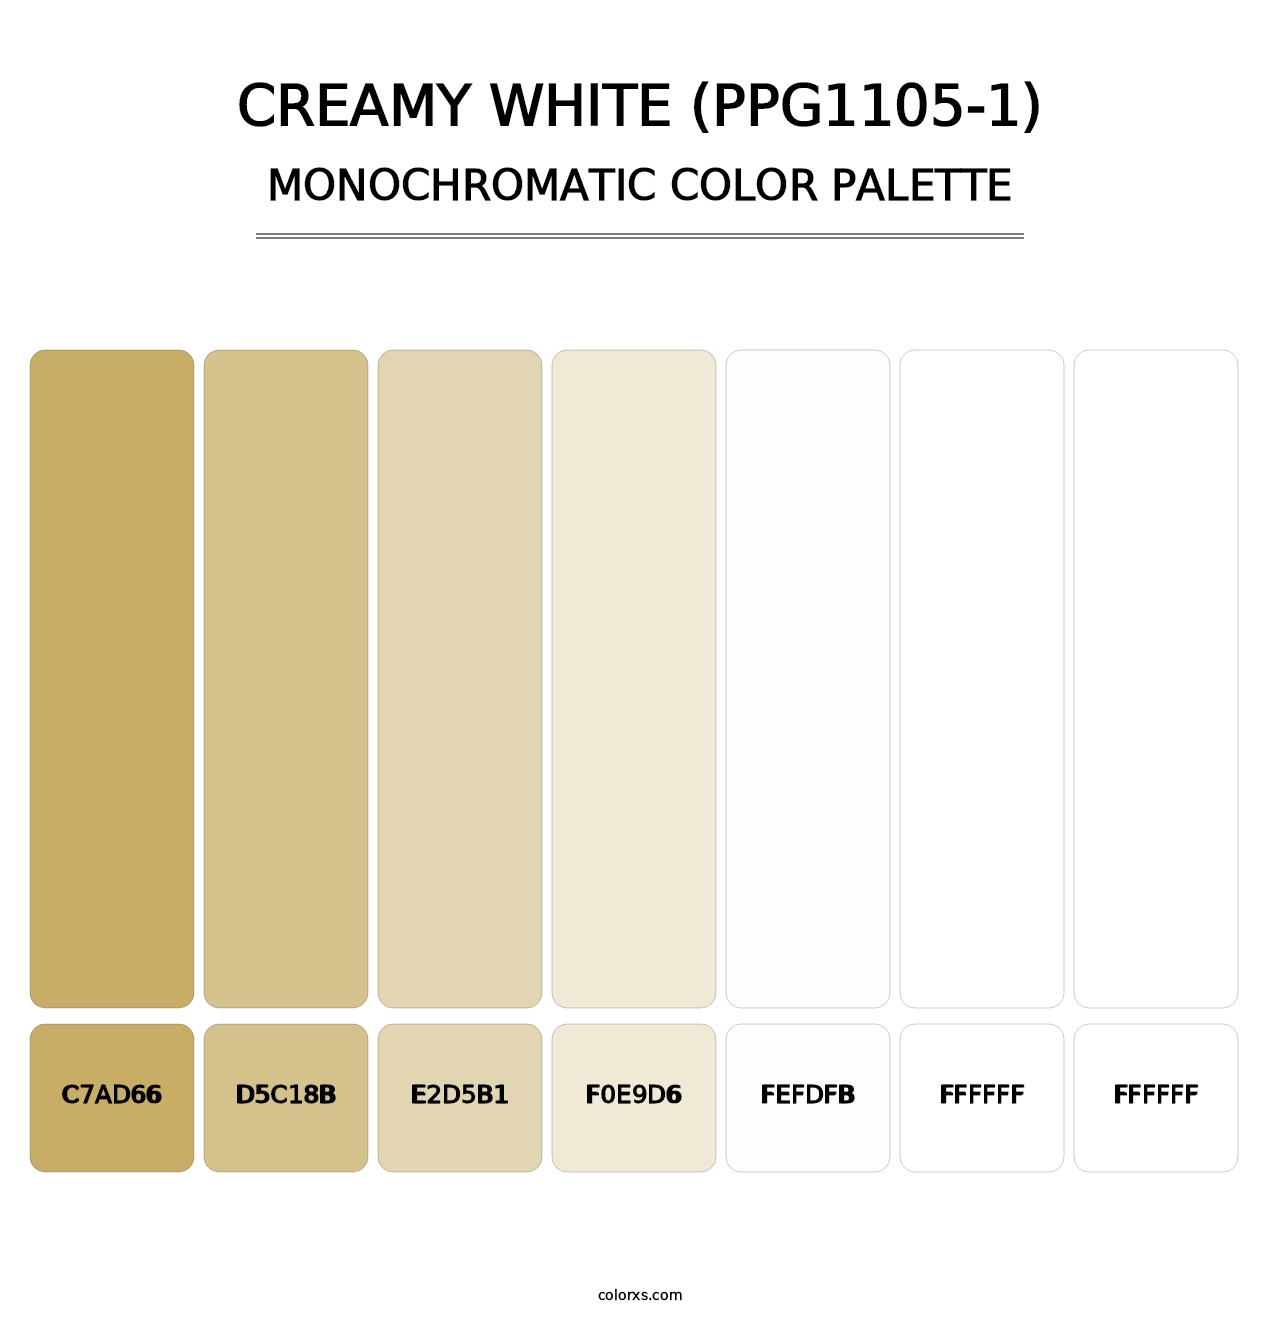 Creamy White (PPG1105-1) - Monochromatic Color Palette